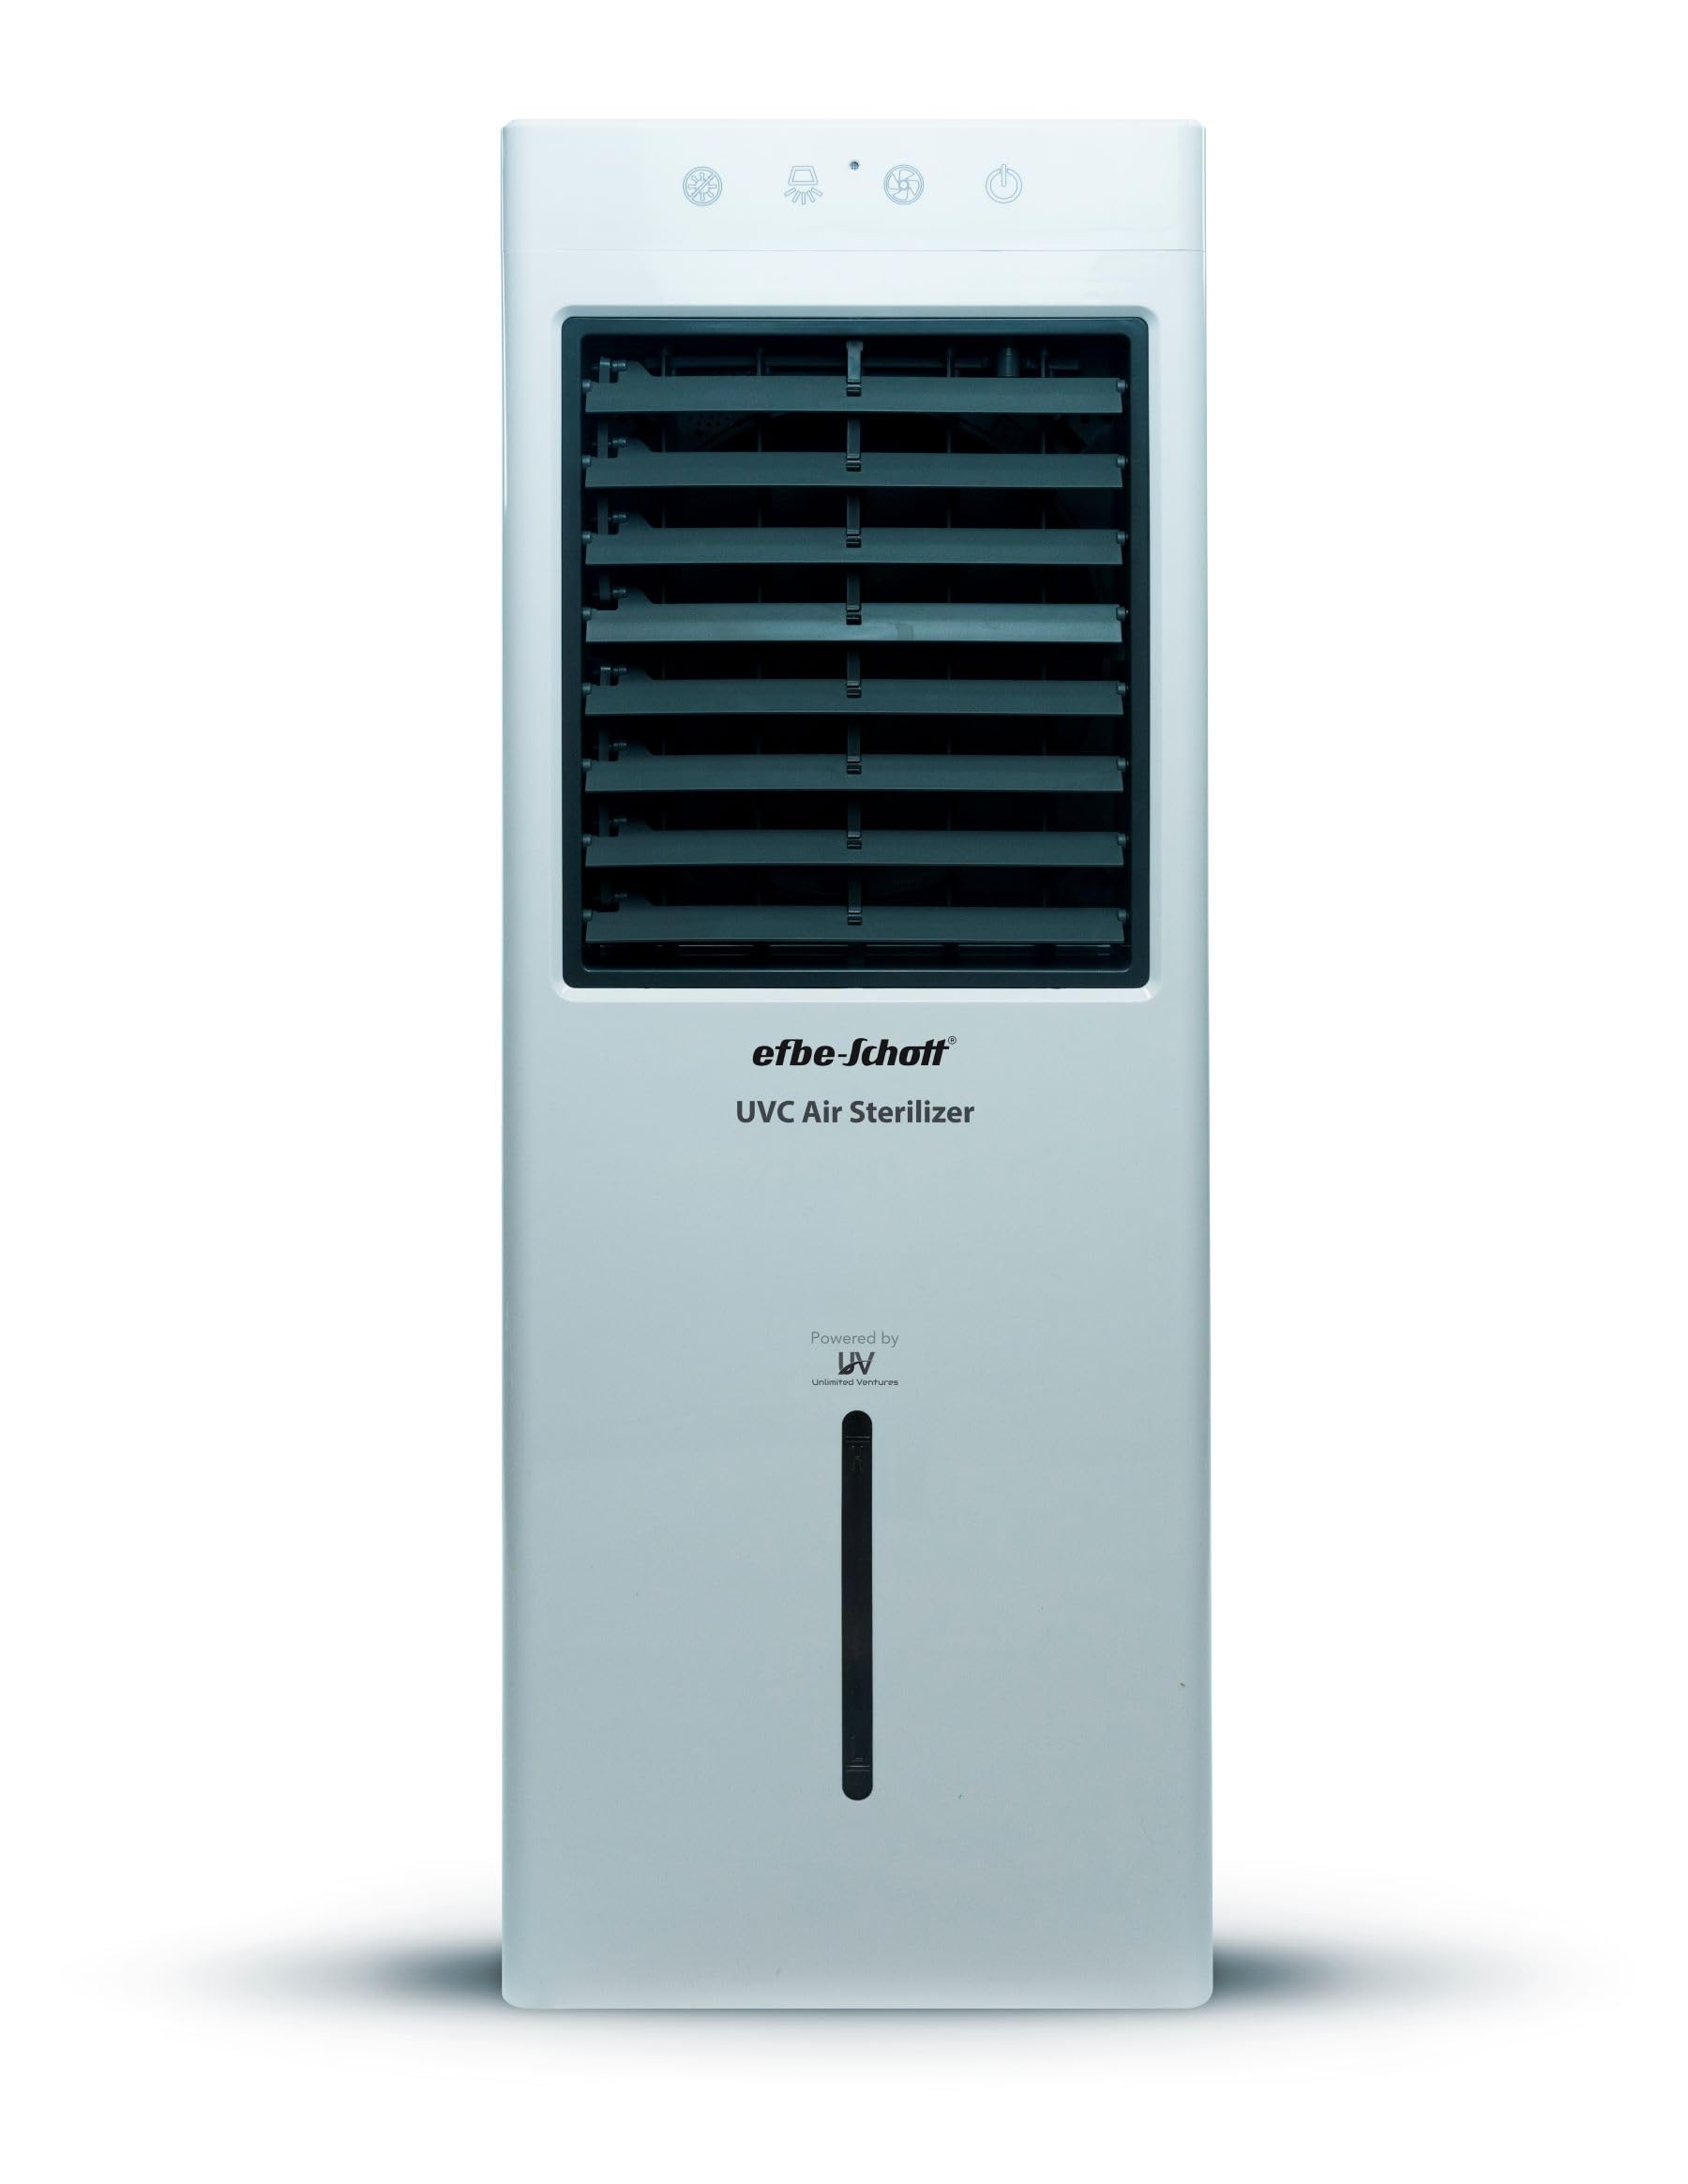 Efbe-Schott SC UV 900 Luftentkeimer mit UVC Technologie, zertifizierte Entkeimung zu 99,9999% von Viren, 156 m3/h, Vier Aktivkohlefilter, 110 W, Weiß